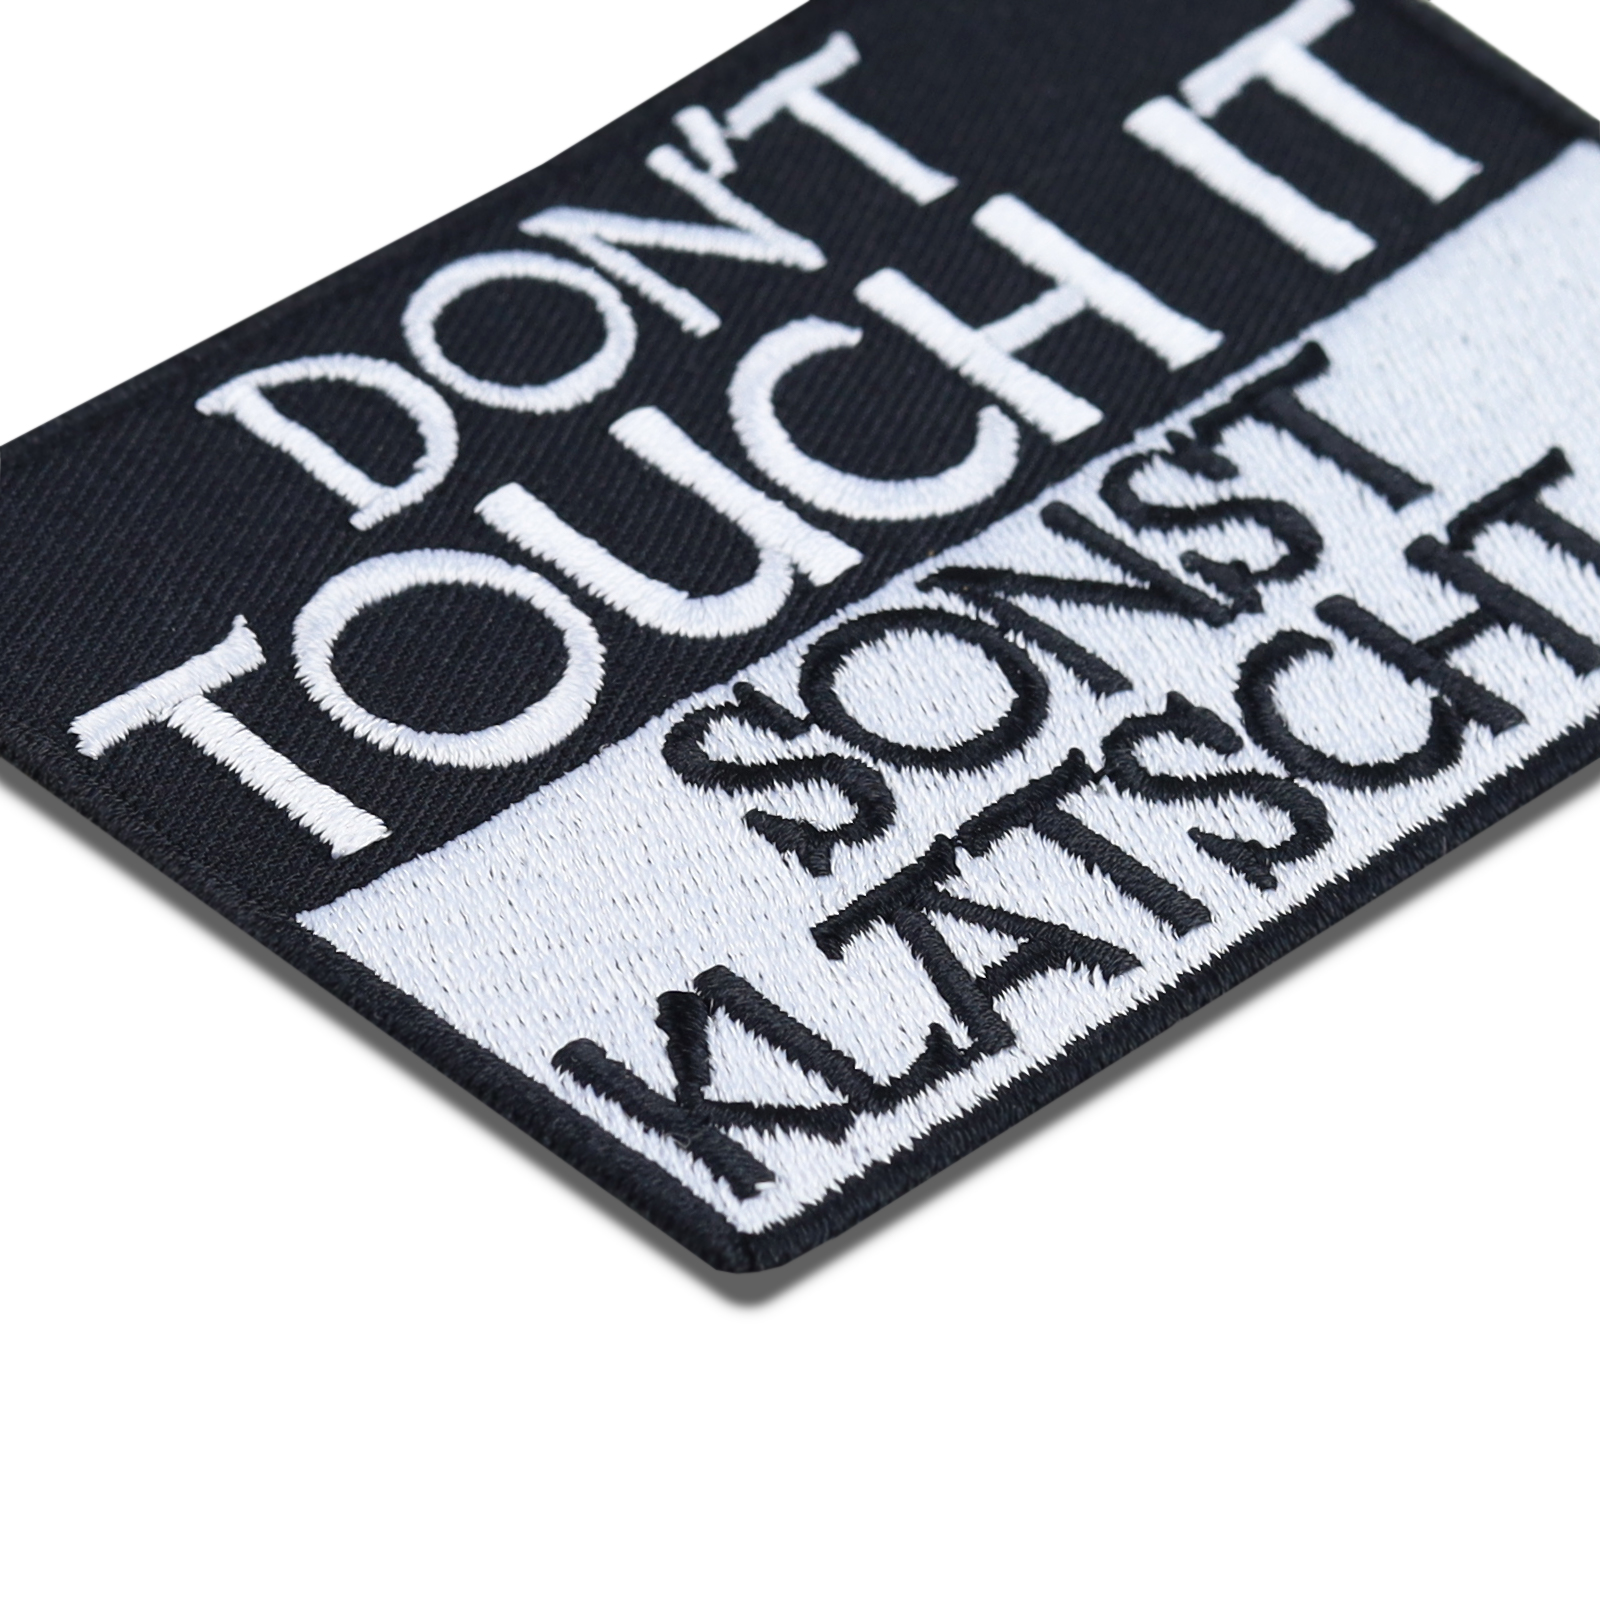 Don't touch it! Sonst klatsch it! - Patch